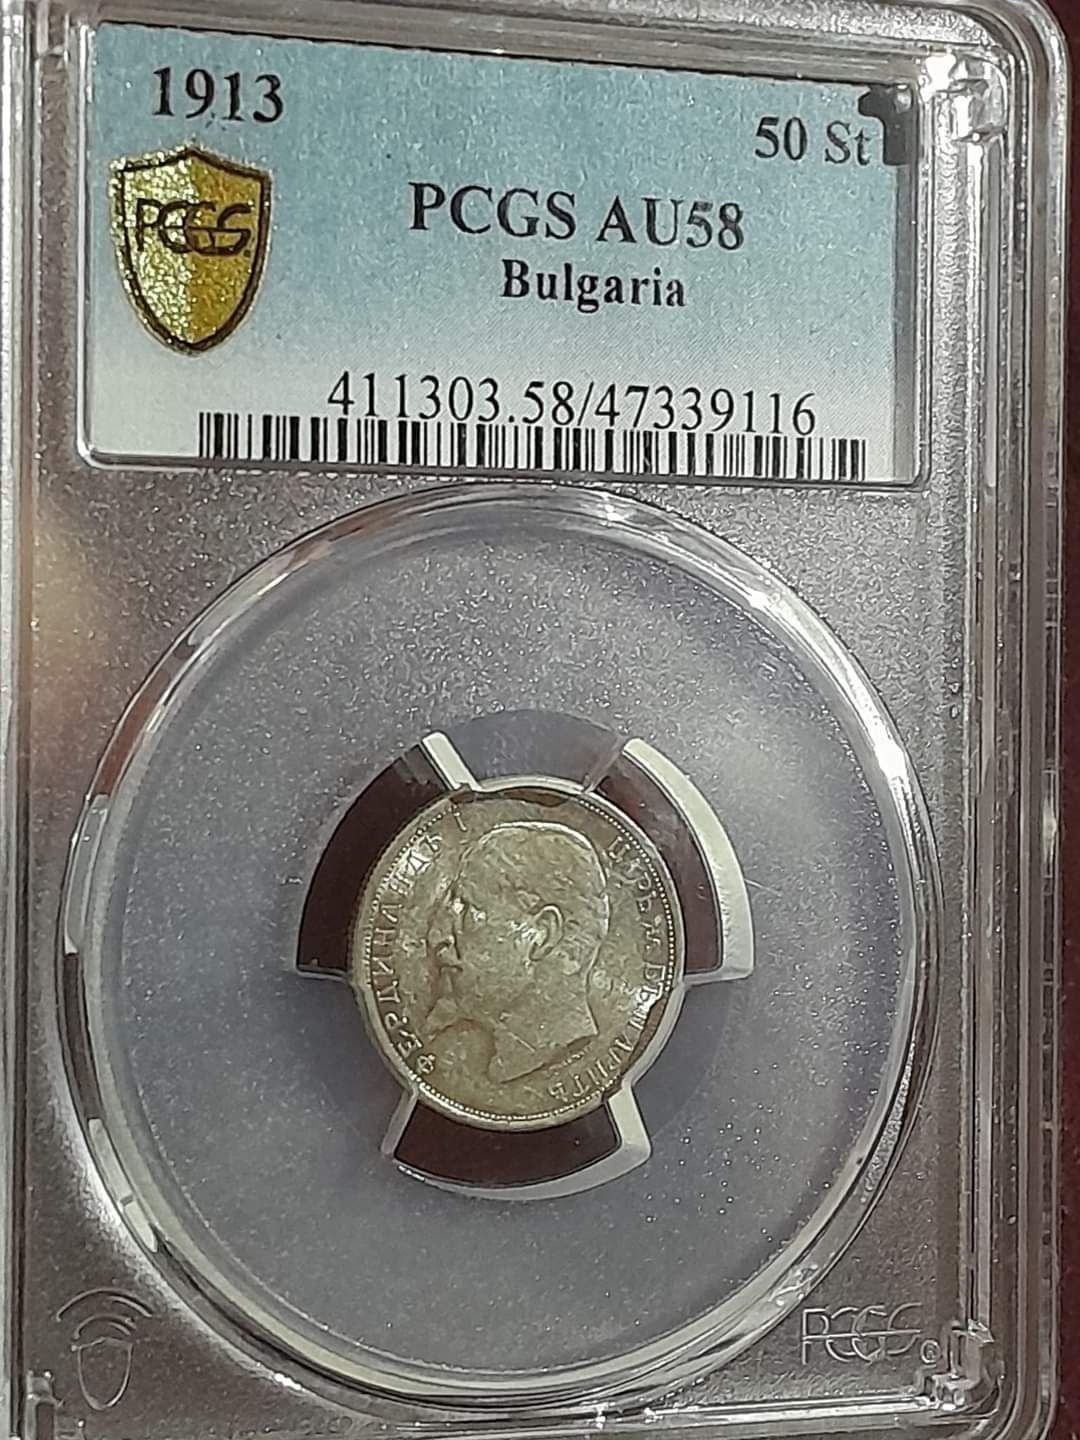 AU 58 PCGS 50 стотинки 1913 г. 90лева!